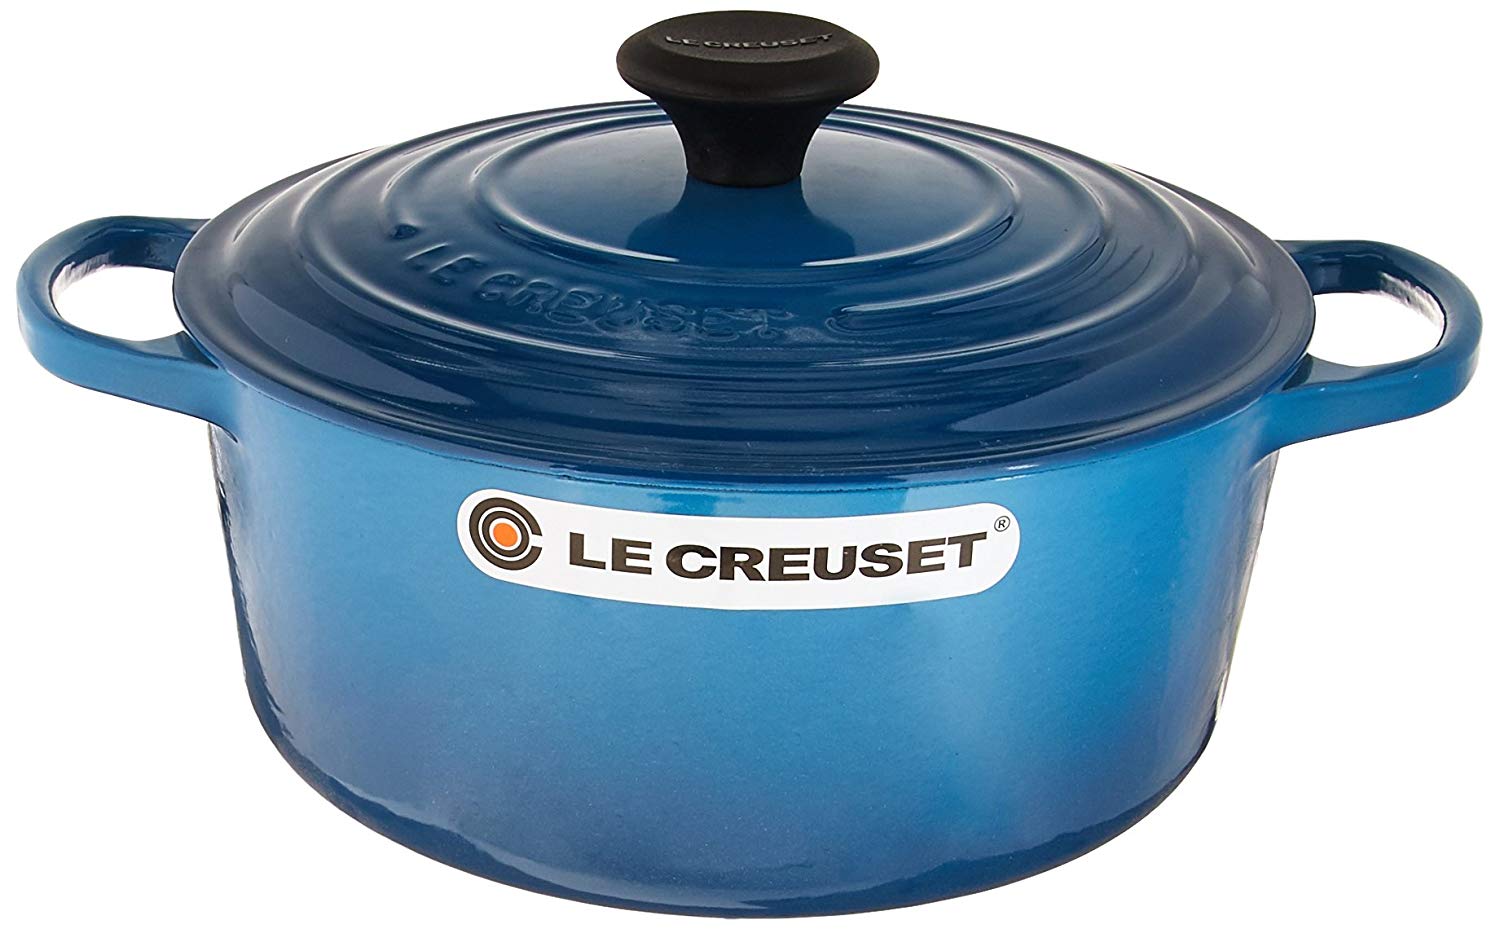 Le Creuset Signature Cast Iron 7.5 qt. Marseille Chef's Oven